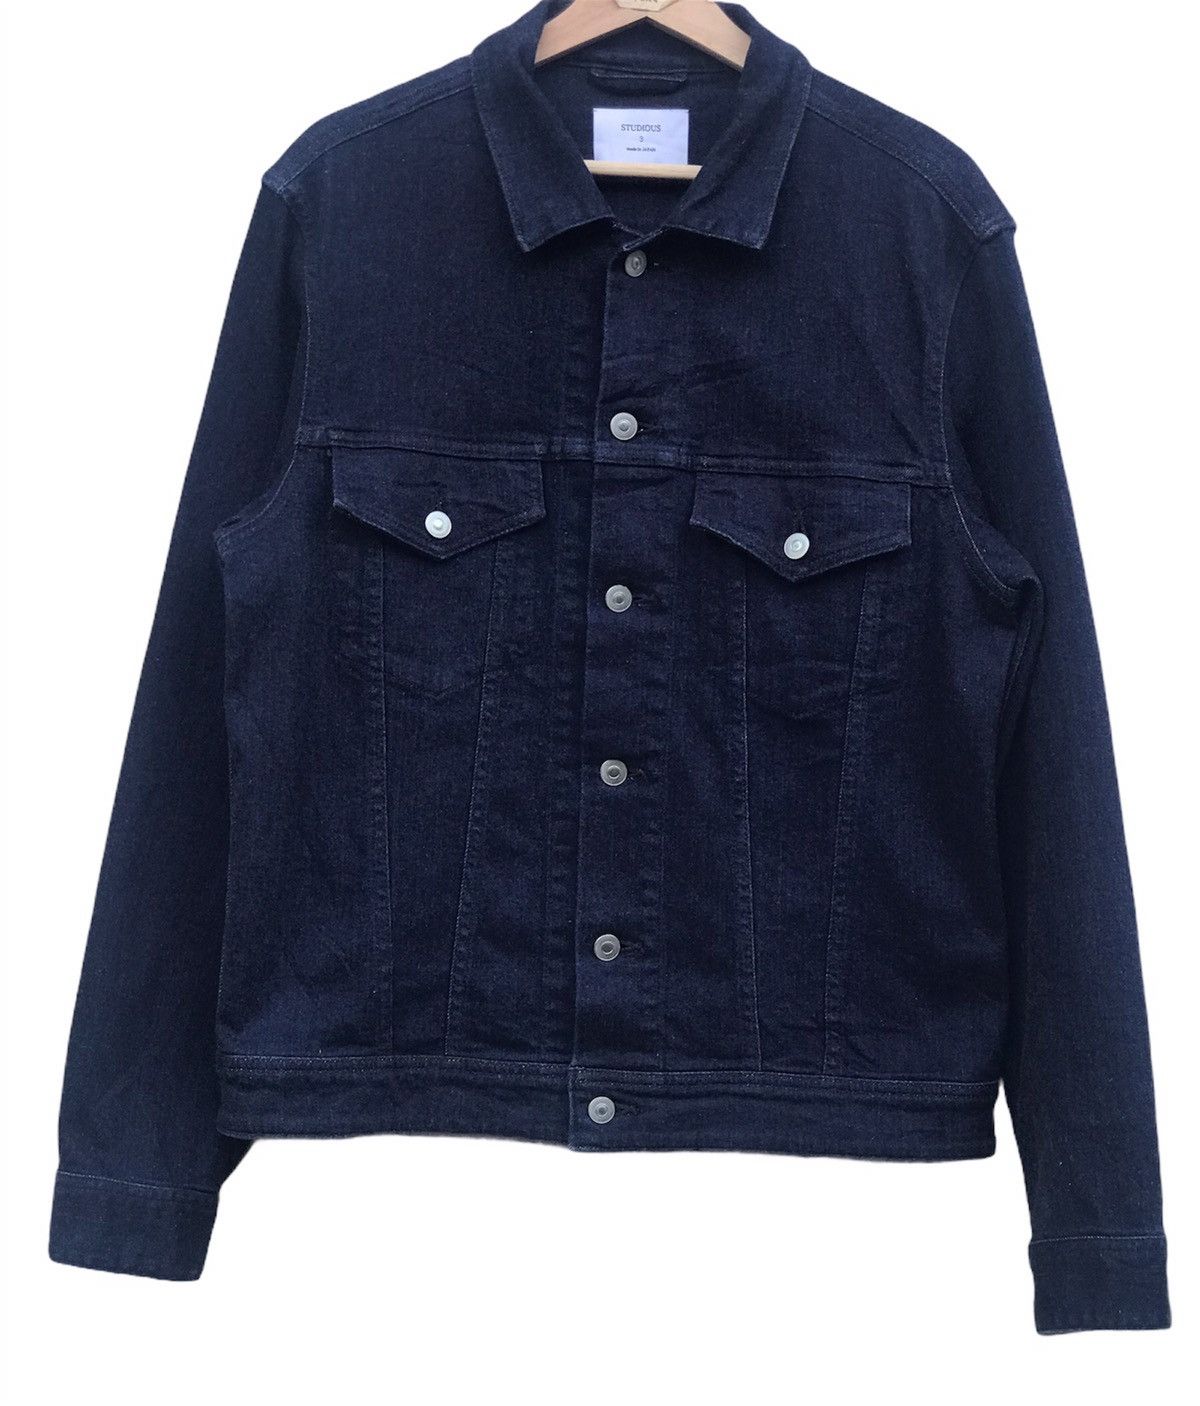 Japanese Brand Denim Jacket Jeans Studious | Grailed